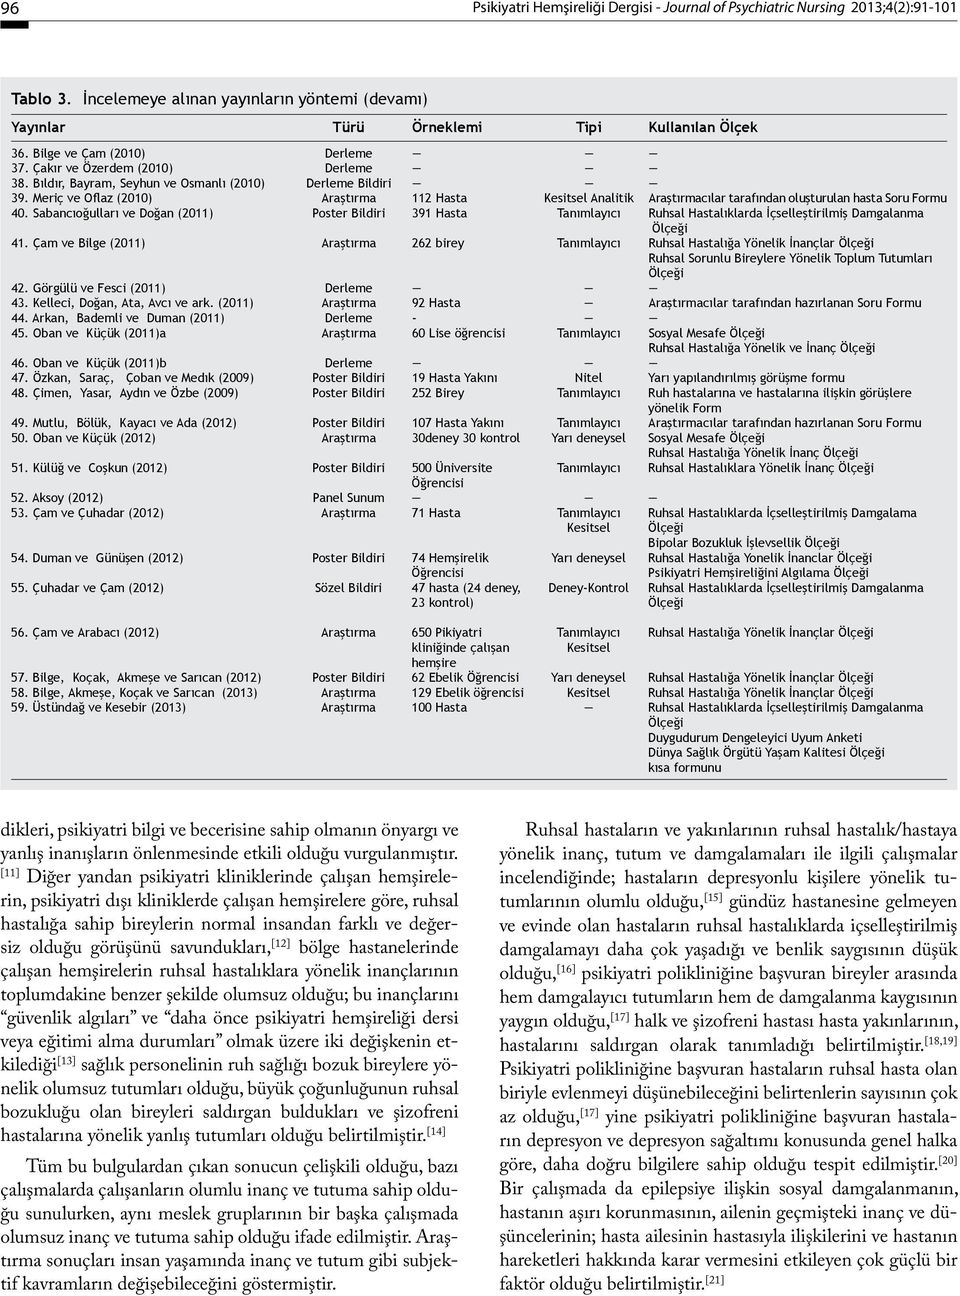 Meriç ve Oflaz (2010) Araştırma 112 Hasta Kesitsel Analitik Araştırmacılar tarafından oluşturulan hasta Soru Formu 40.